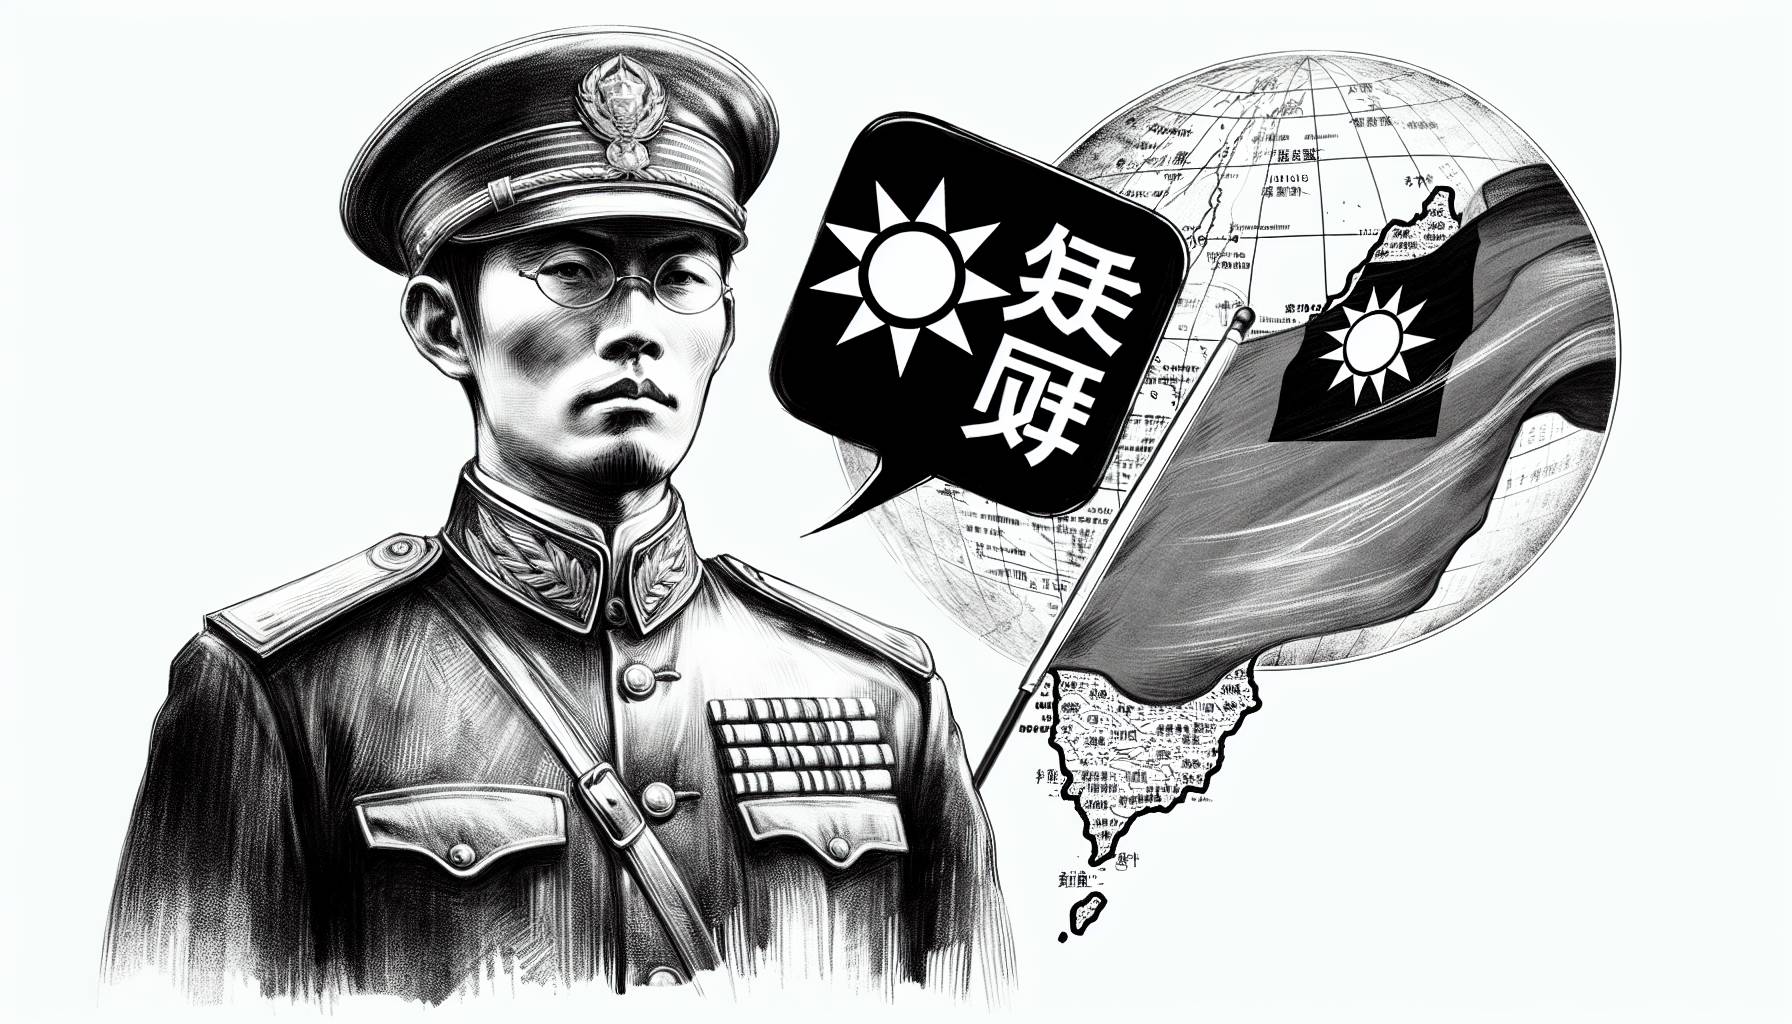 "China's Defense Warning"